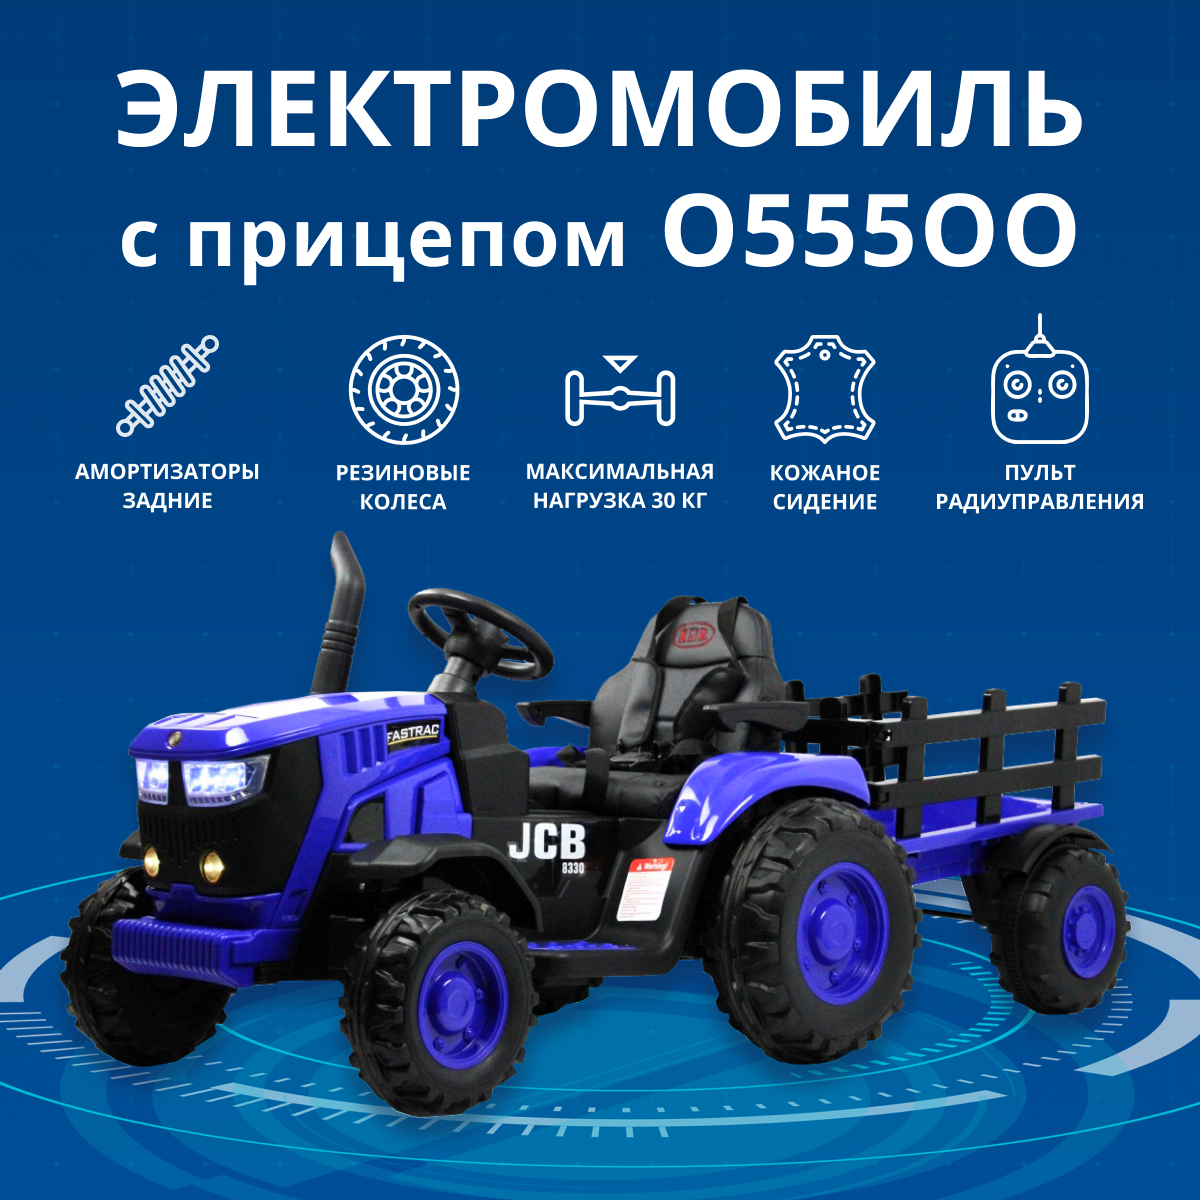 Электромобиль RIVERTOYS O555OO трактор с прицепом и дистанционным управлением, синий электромобиль jiajia трактор с прицепом jiajia 8220219b t7